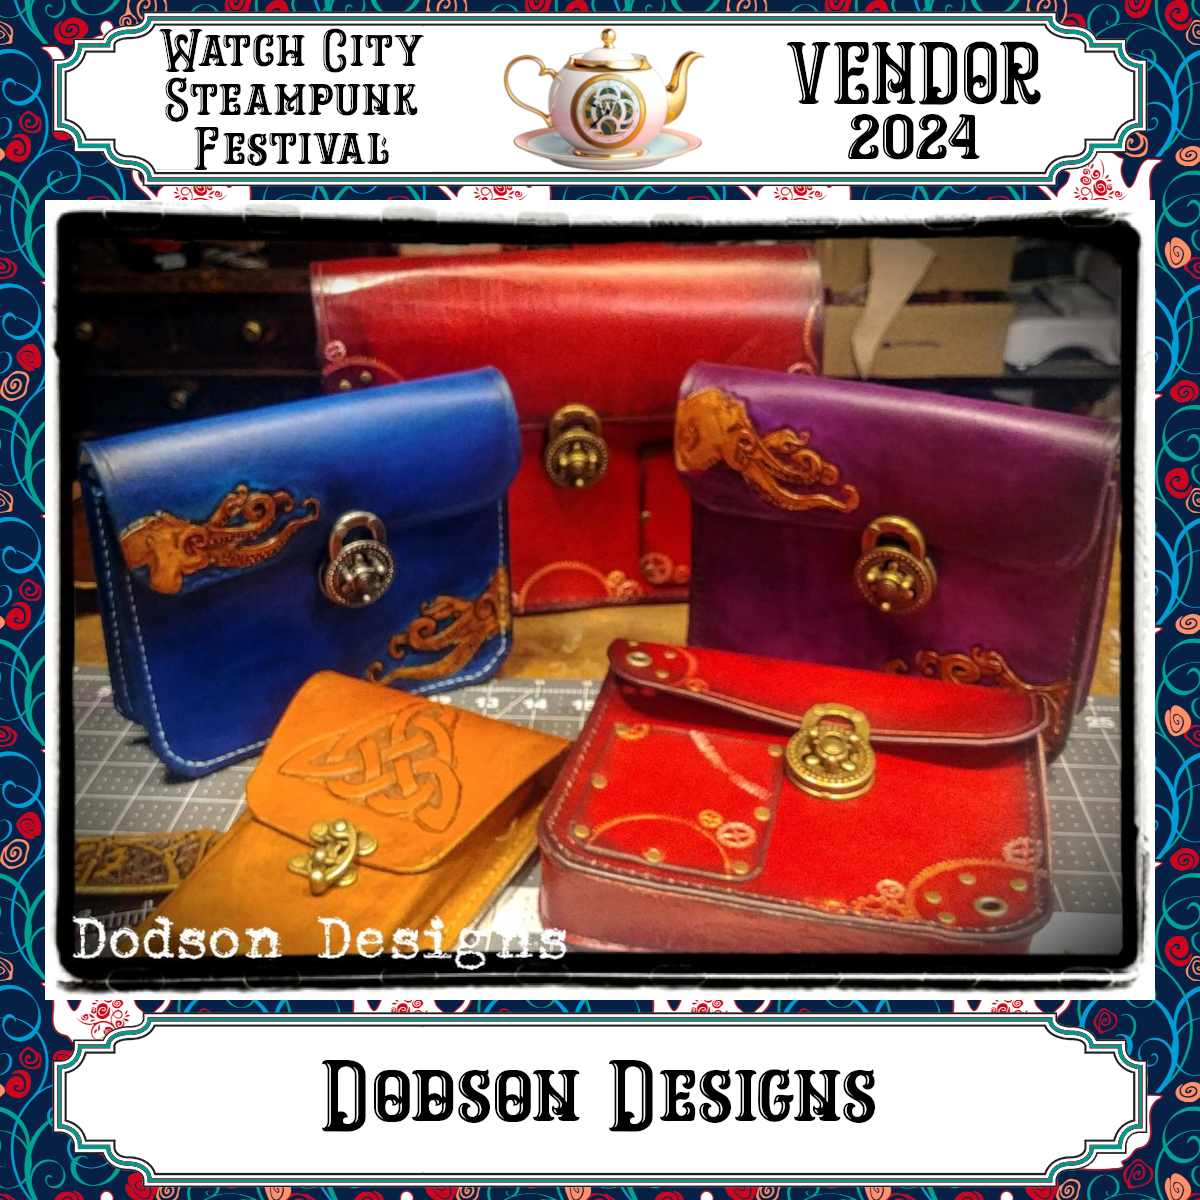 Dodson Designs